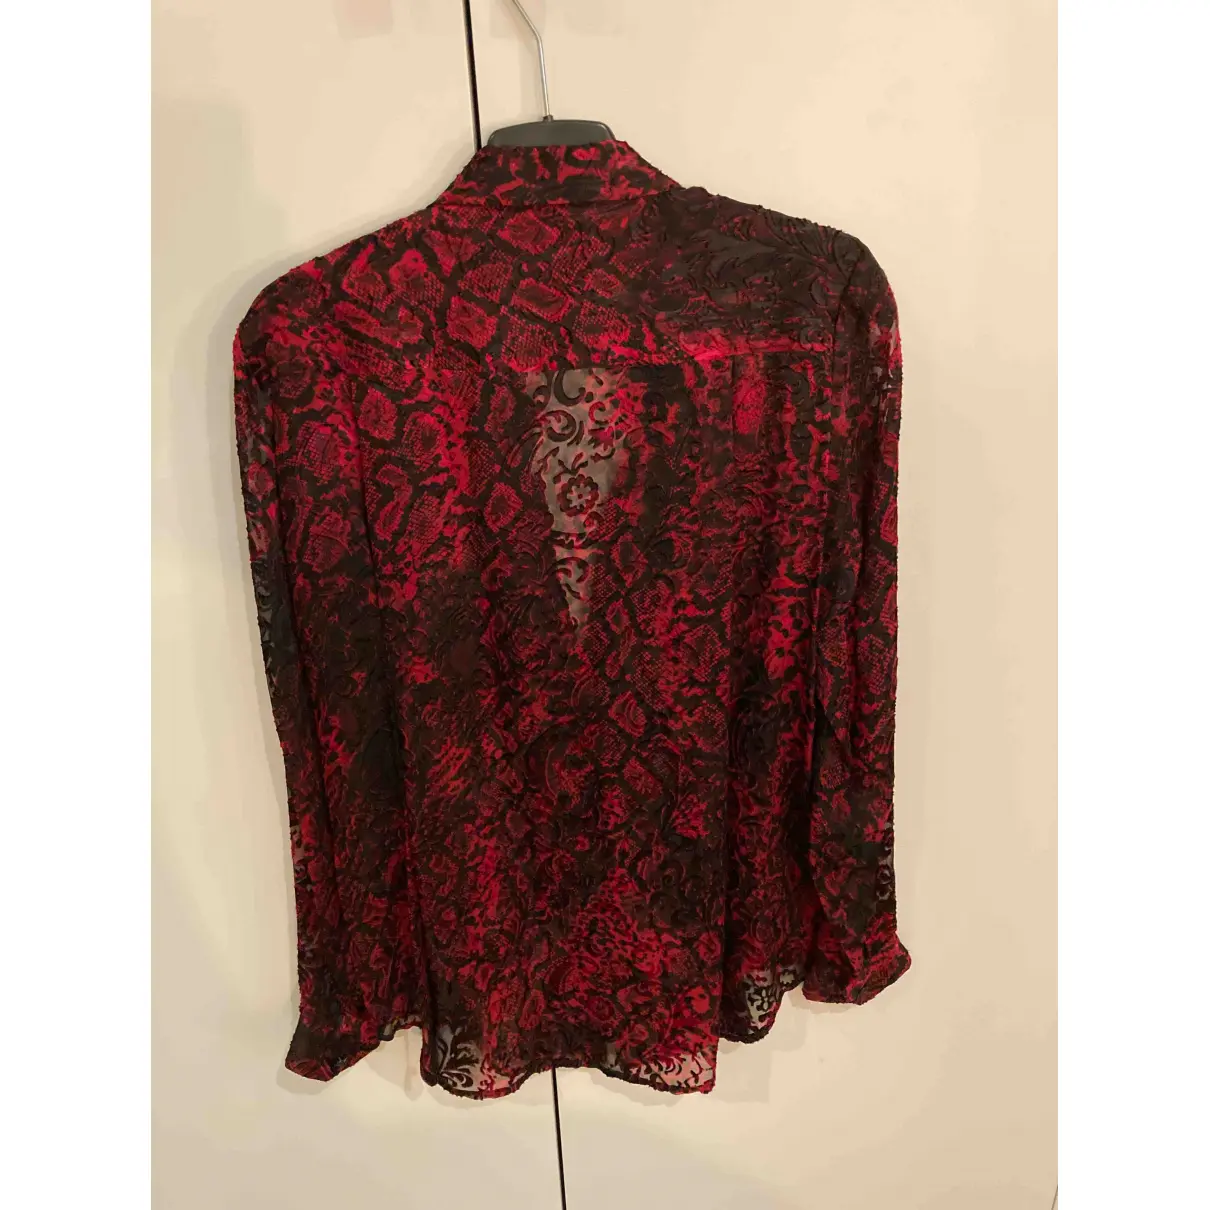 Buy The Kooples Silk blouse online